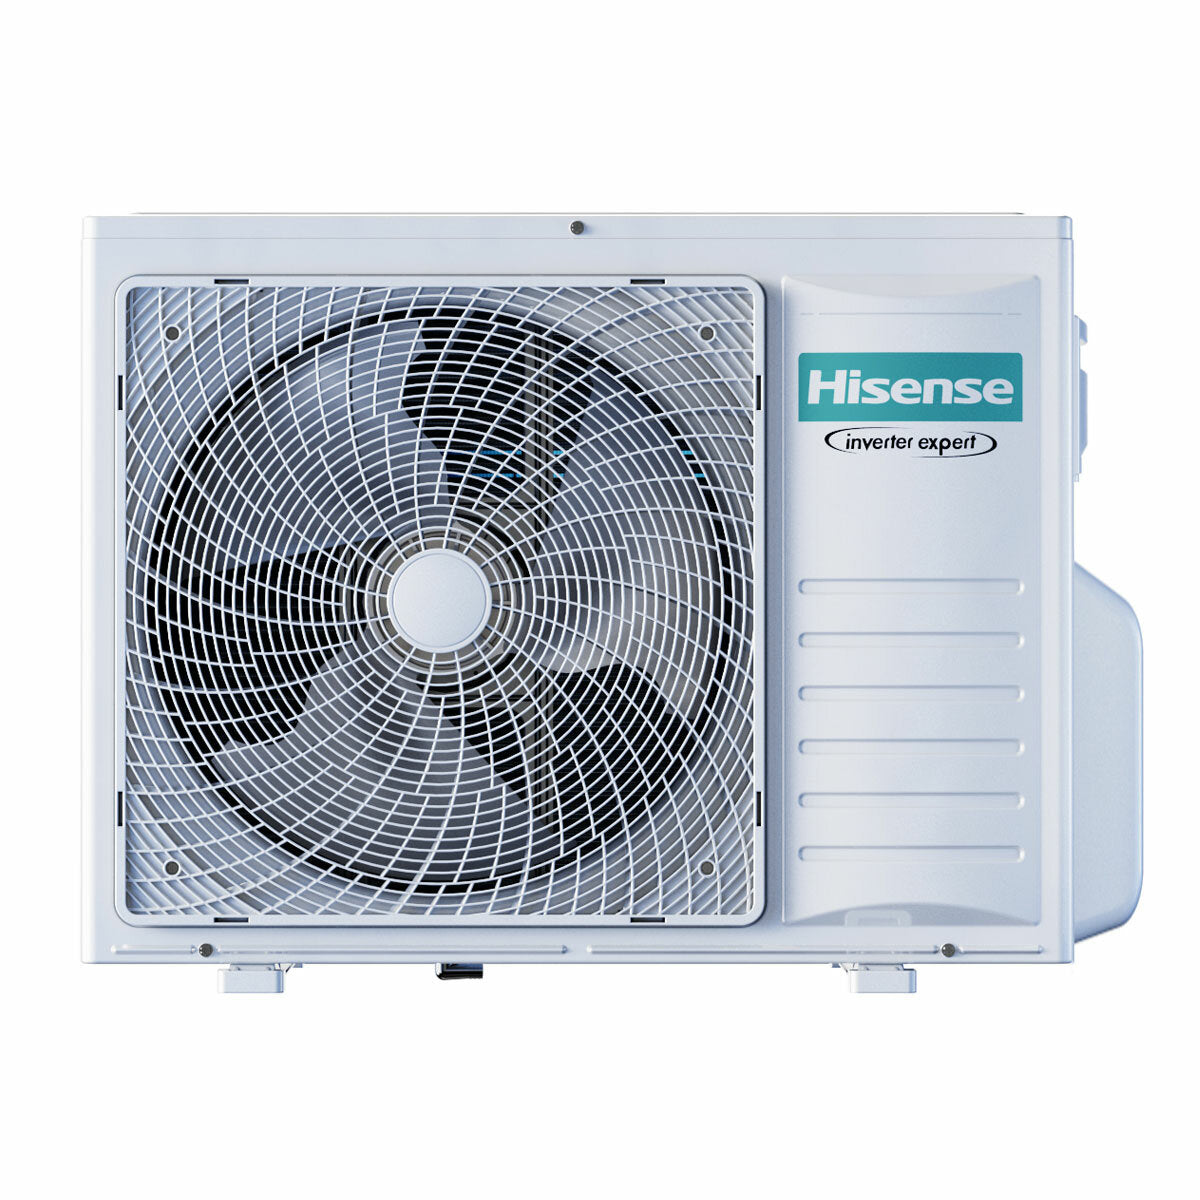 Hisense Hi-Comfort quadri split air conditioner 7000 + 9000 + 12000 + 12000 BTU inverter A++ wifi outdoor unit 8 kW